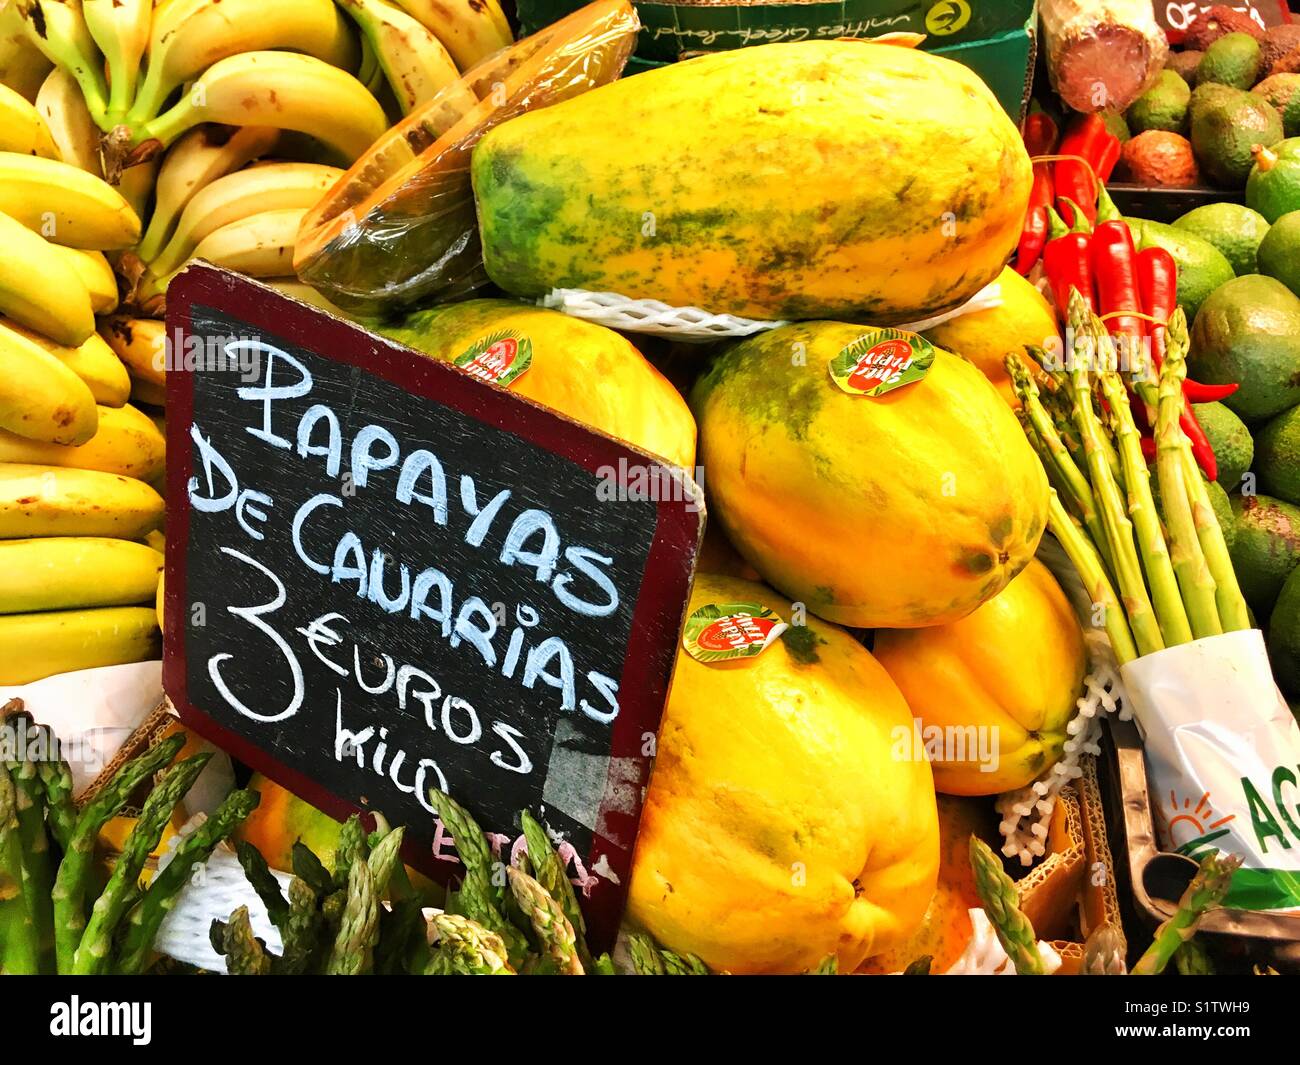 Papayas from Canary Islands, fruits, Spain market Stock Photo